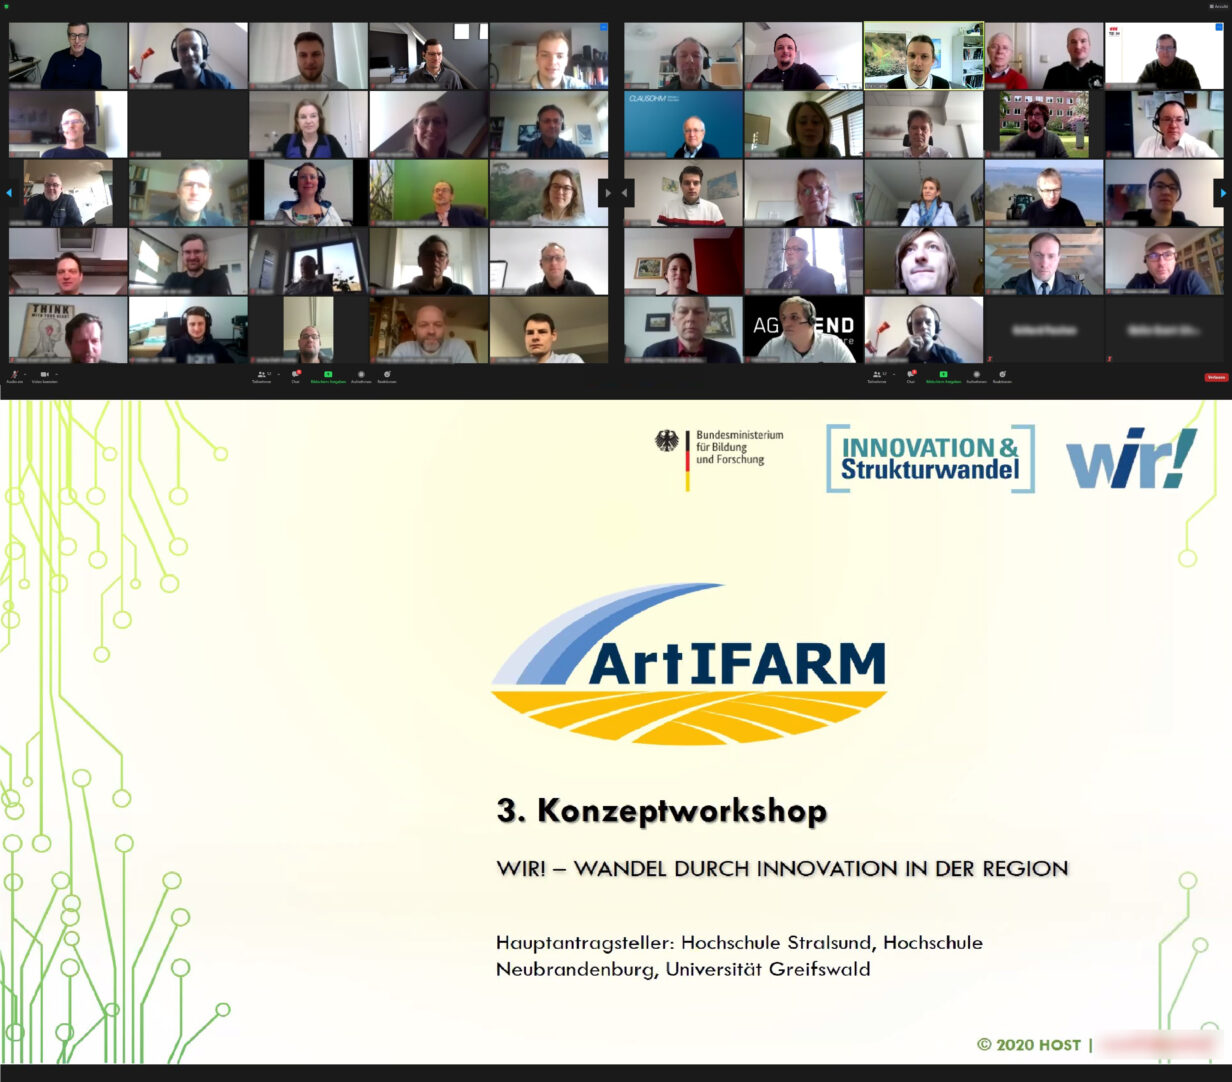 Ditter Workshop des WIR!-Bündnisses ArtIFARM